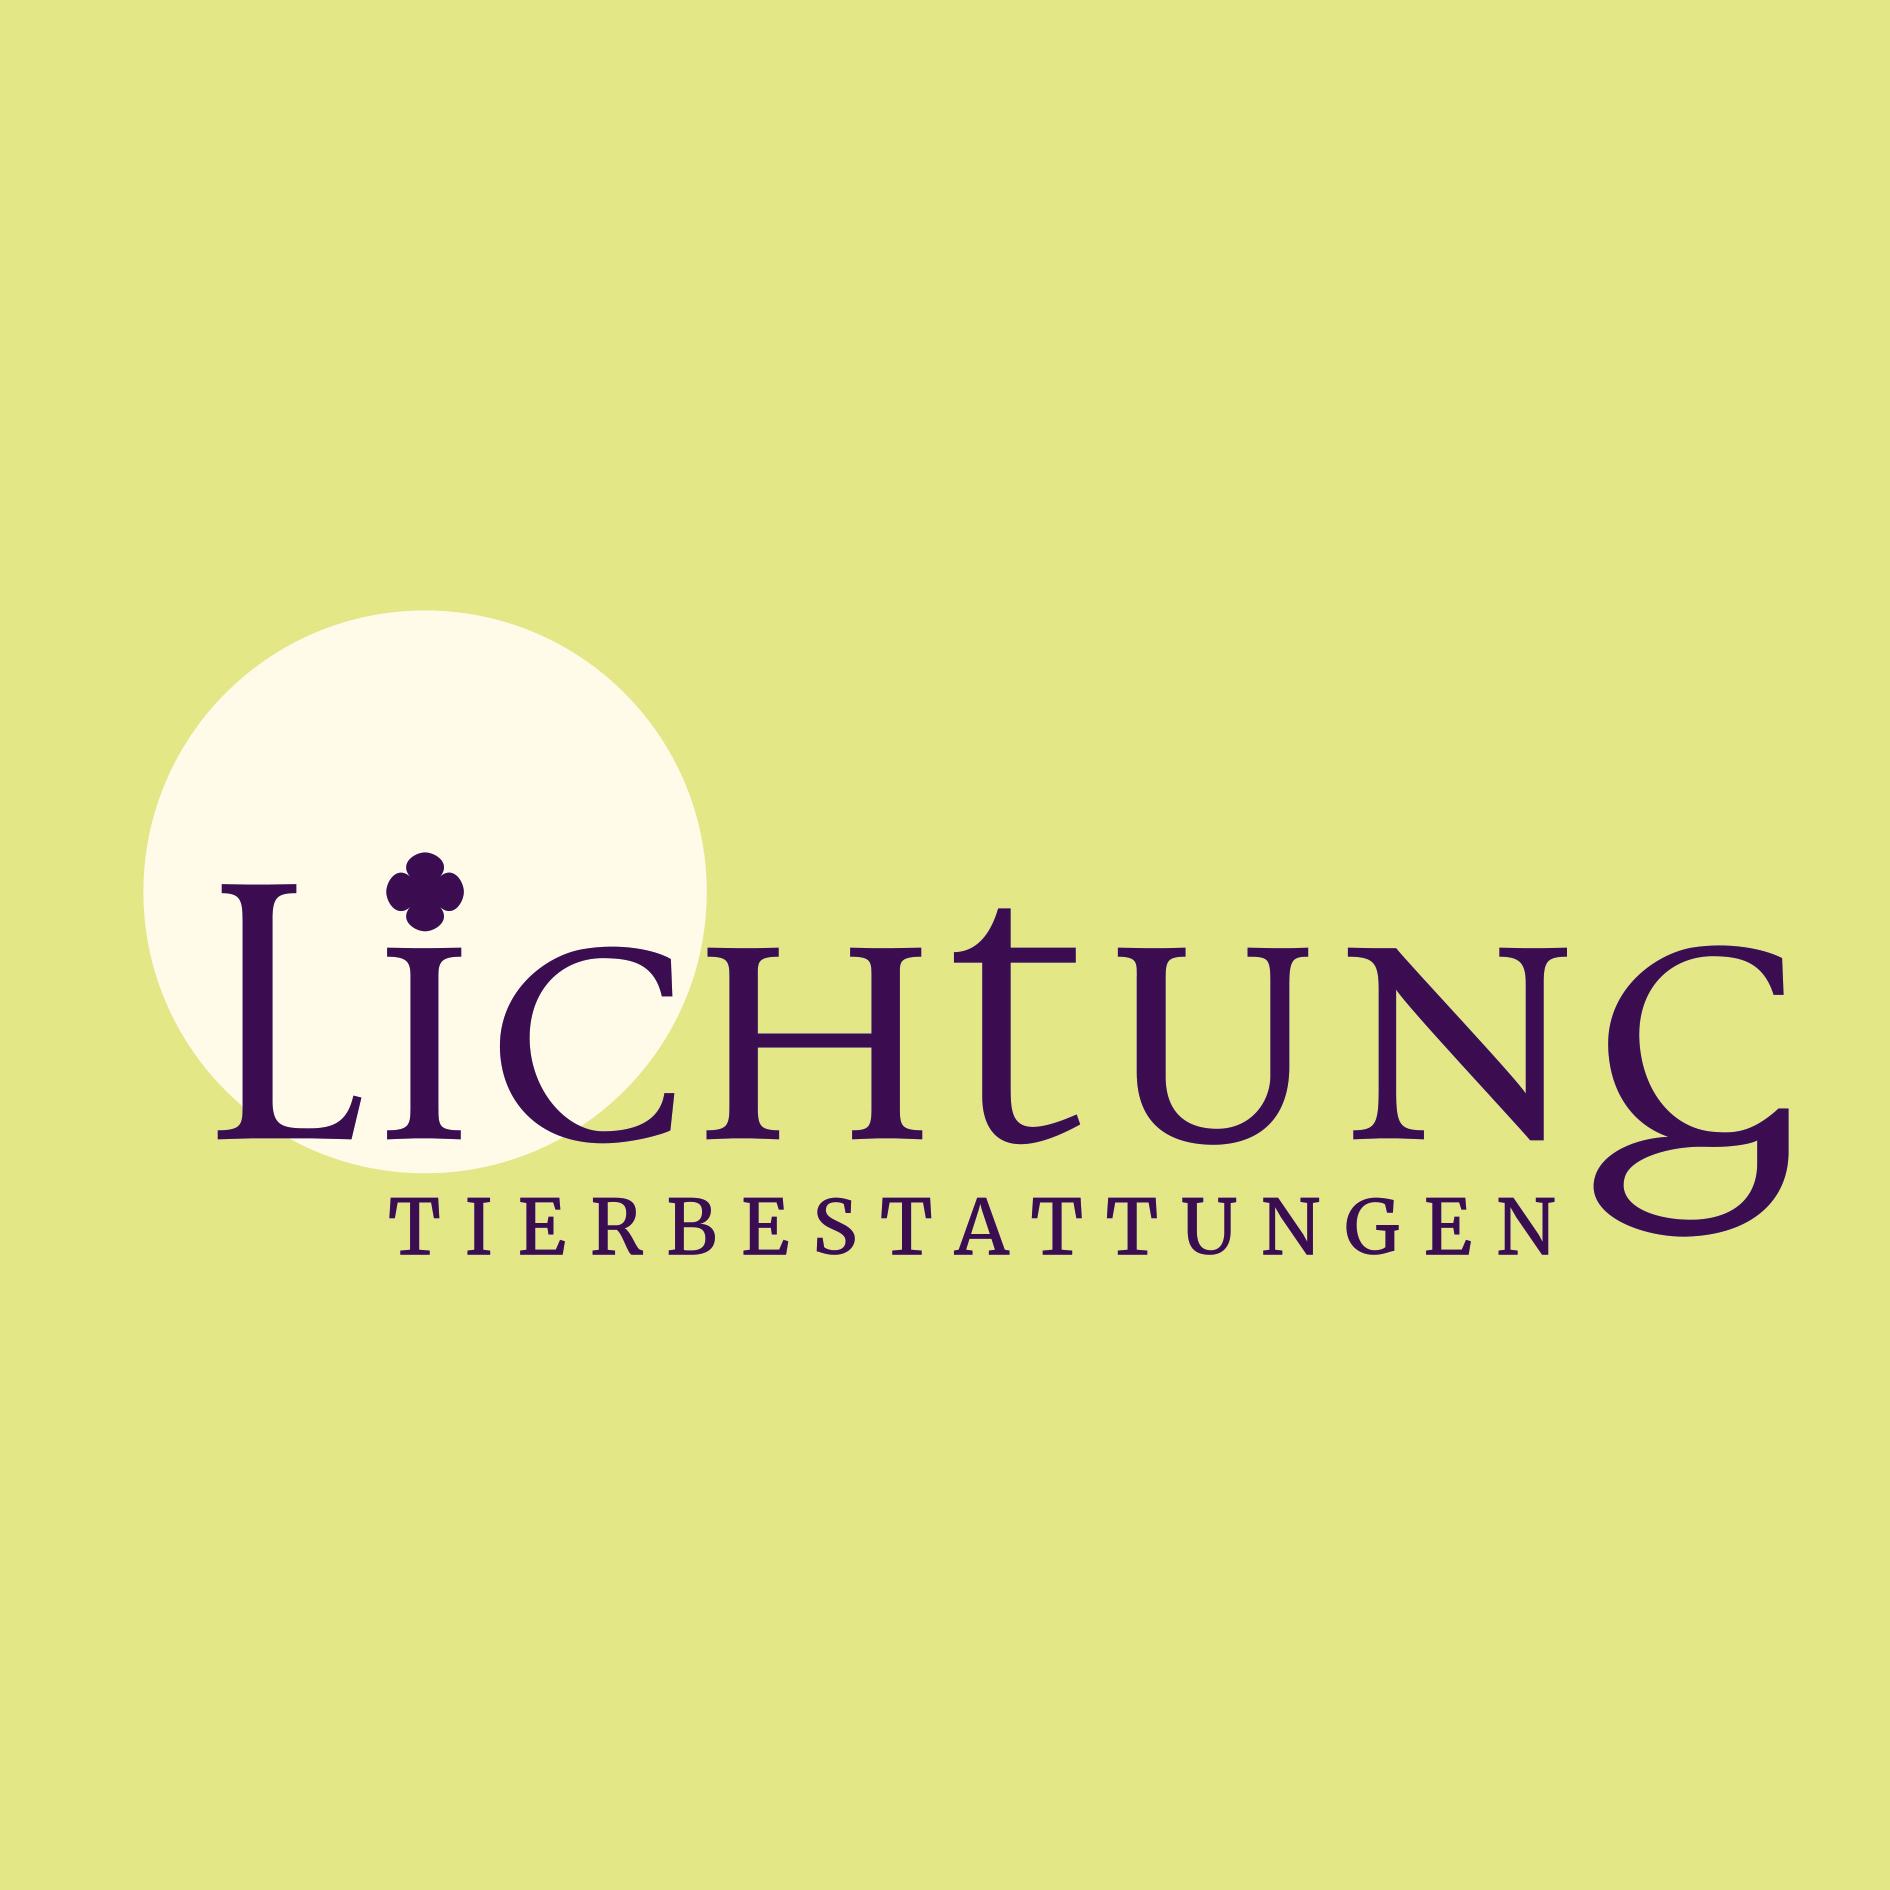 Lichtung Tierbestattungen in Neuburg am Inn - Logo